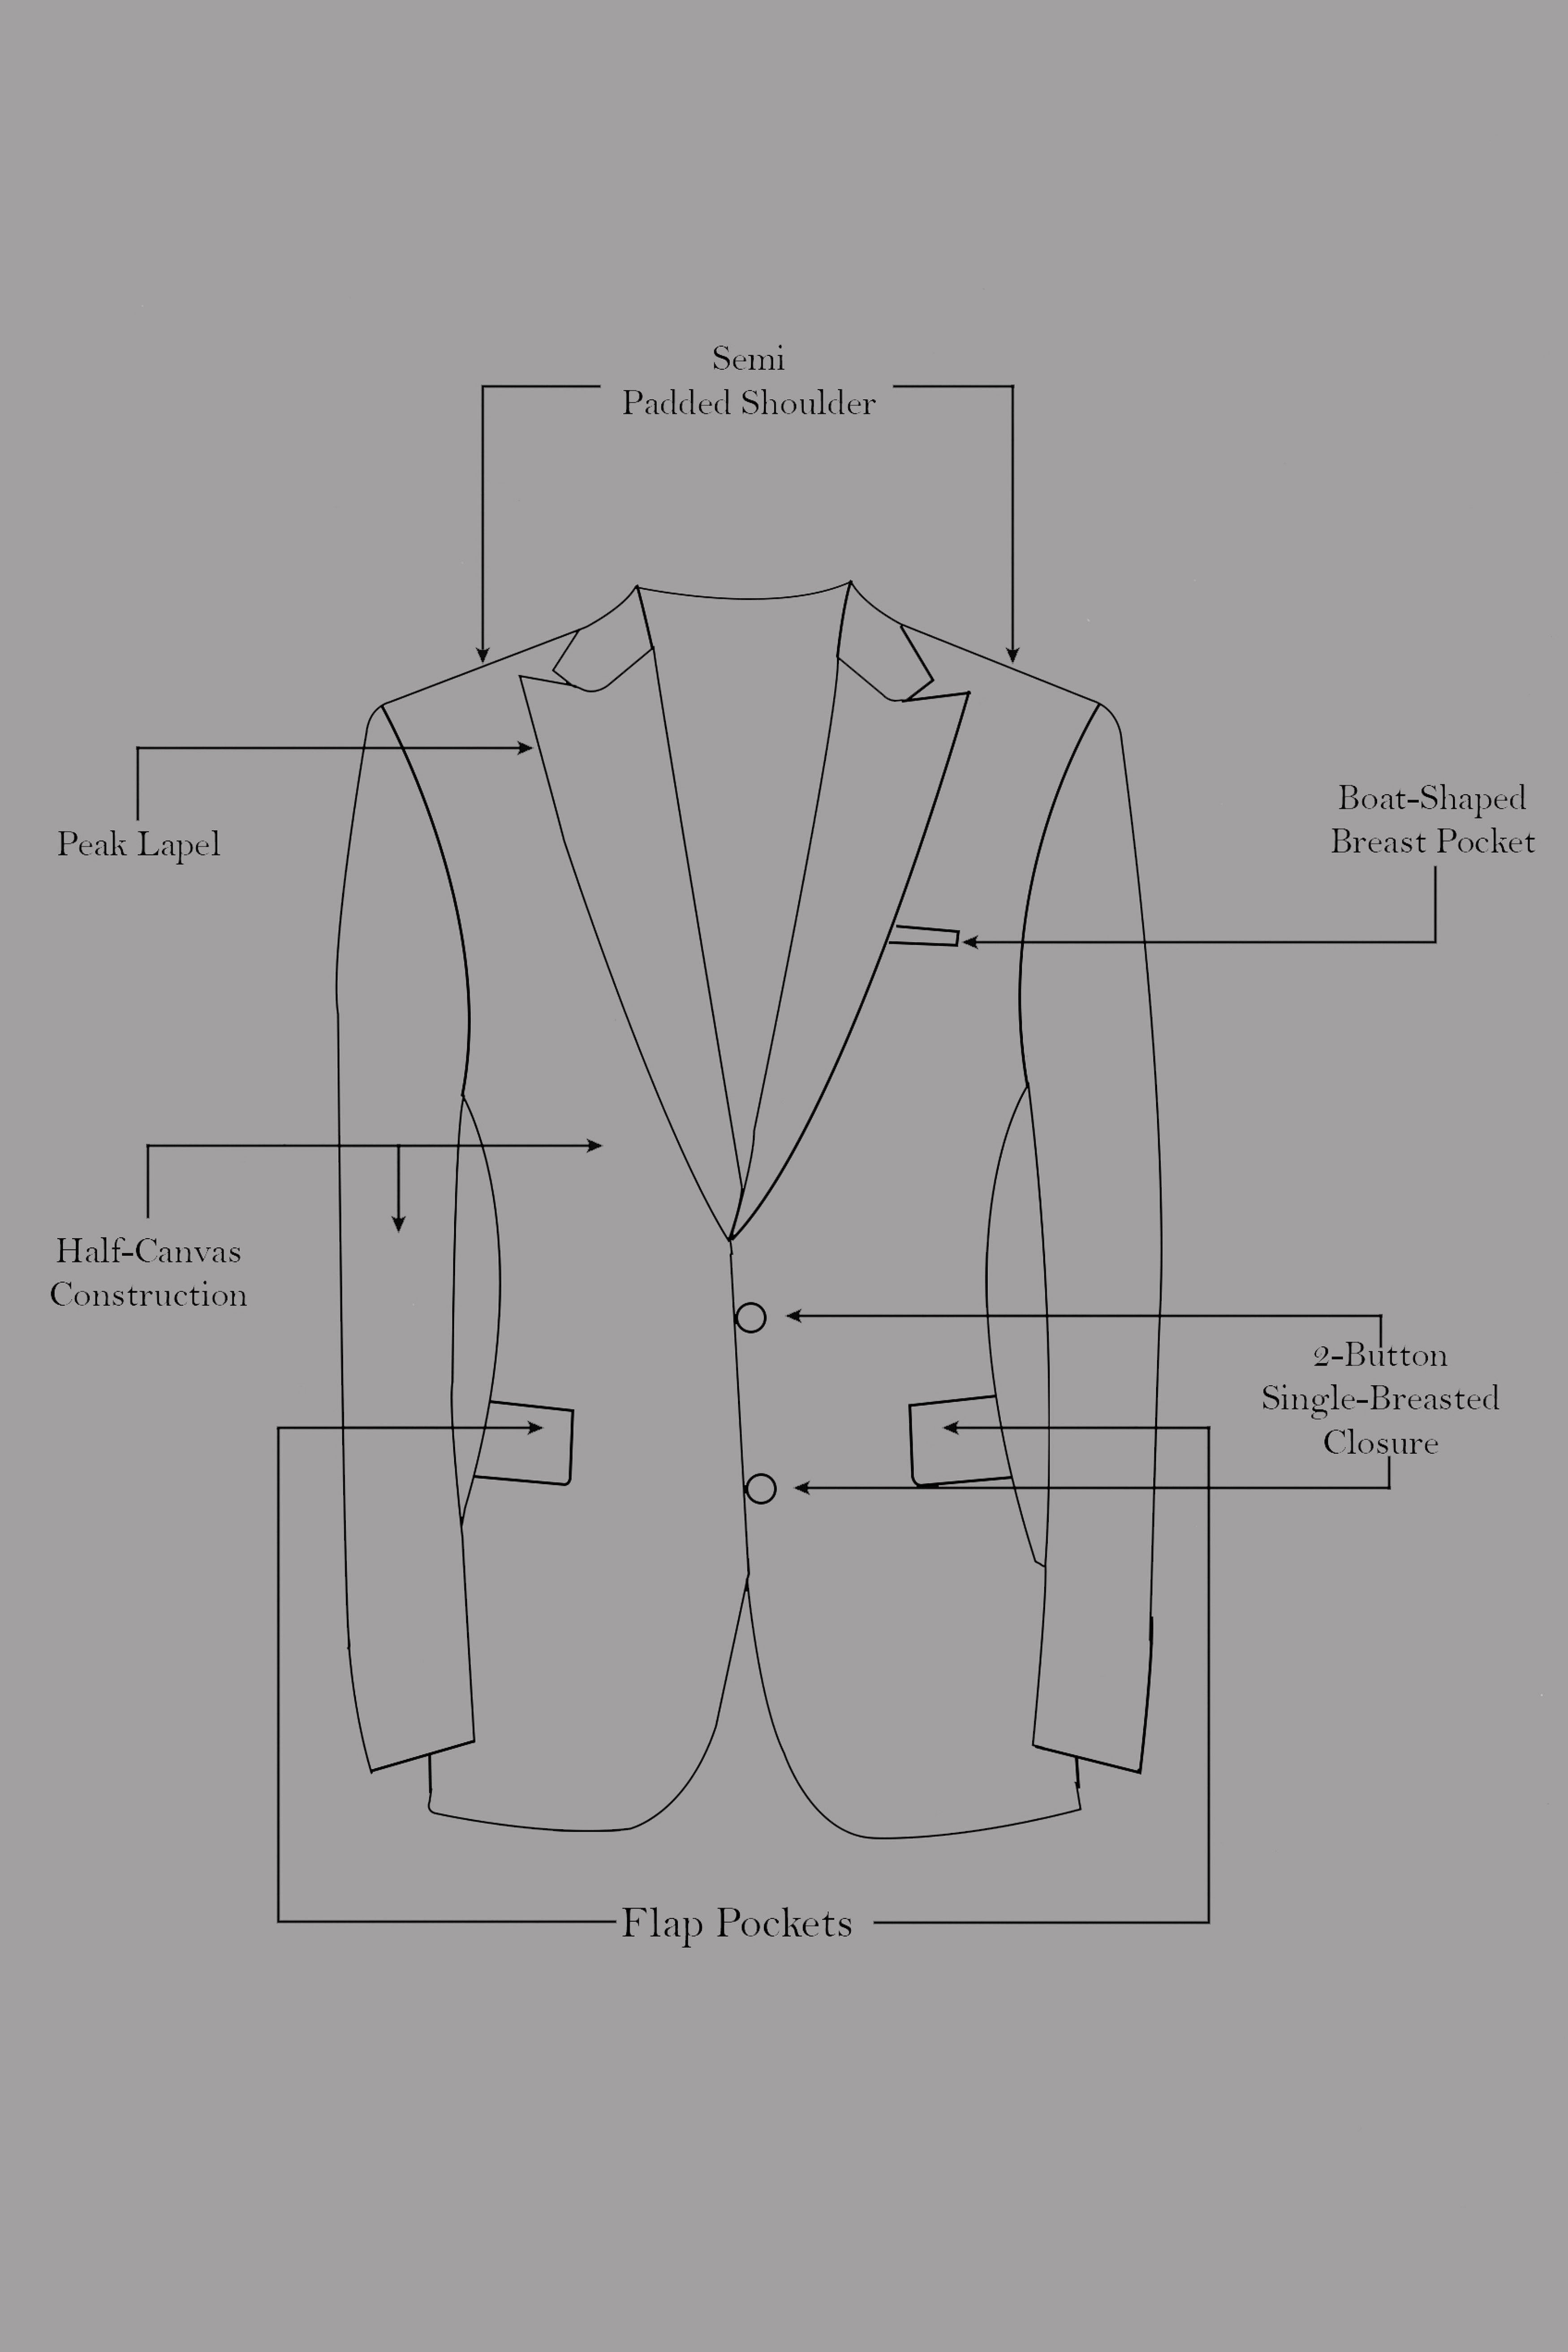 Finch Green and Coffee Brown MultiColour Designer Embroidered Peak Collar Tuxedo Blazer